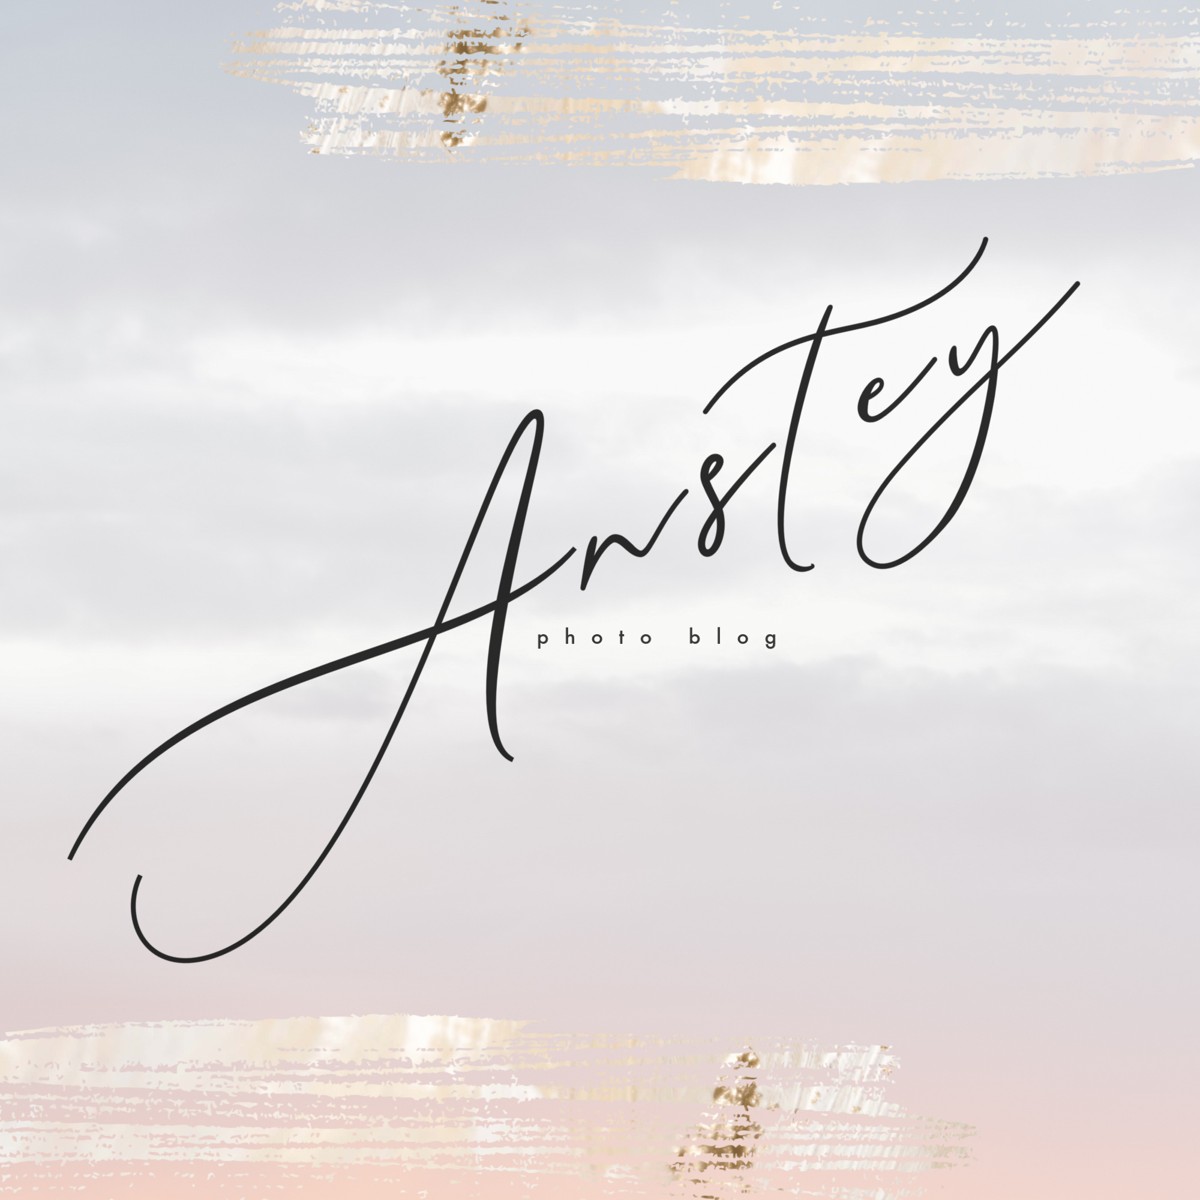 Anstey